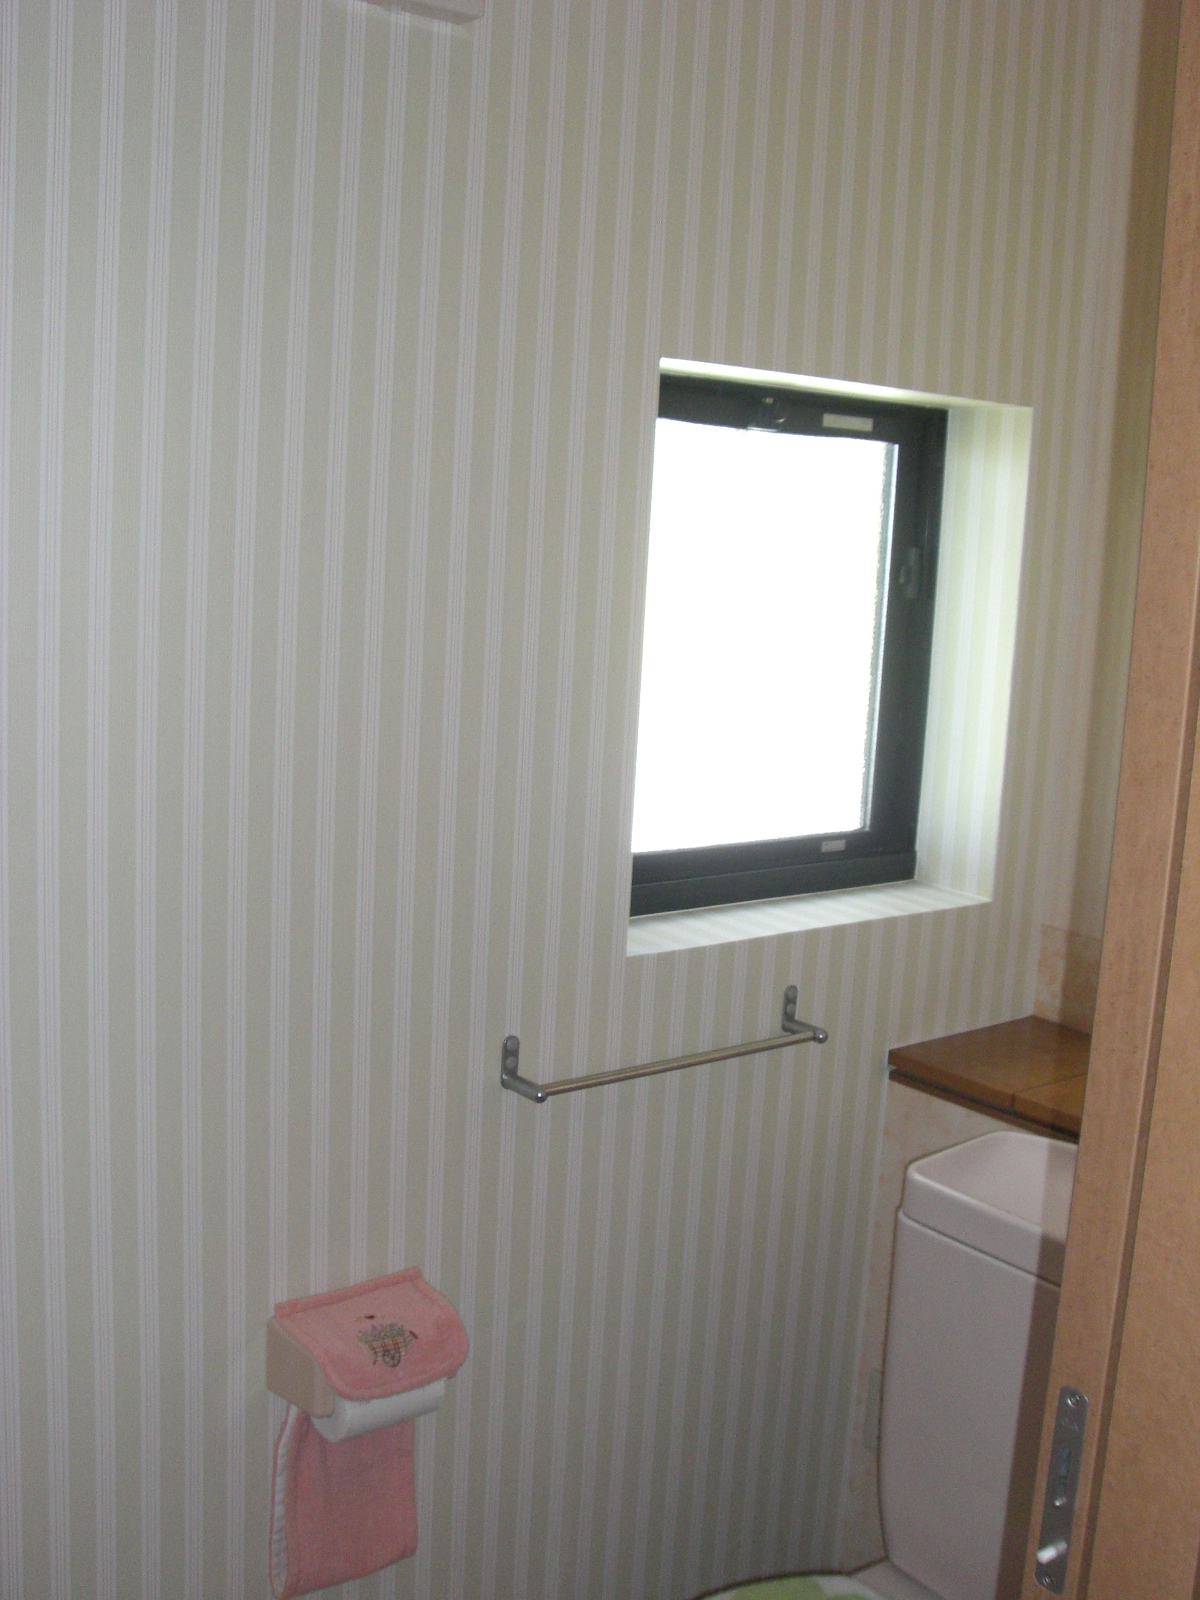 トイレ アクセント張り 鳥取の壁紙張替え内装職人 ブログ編